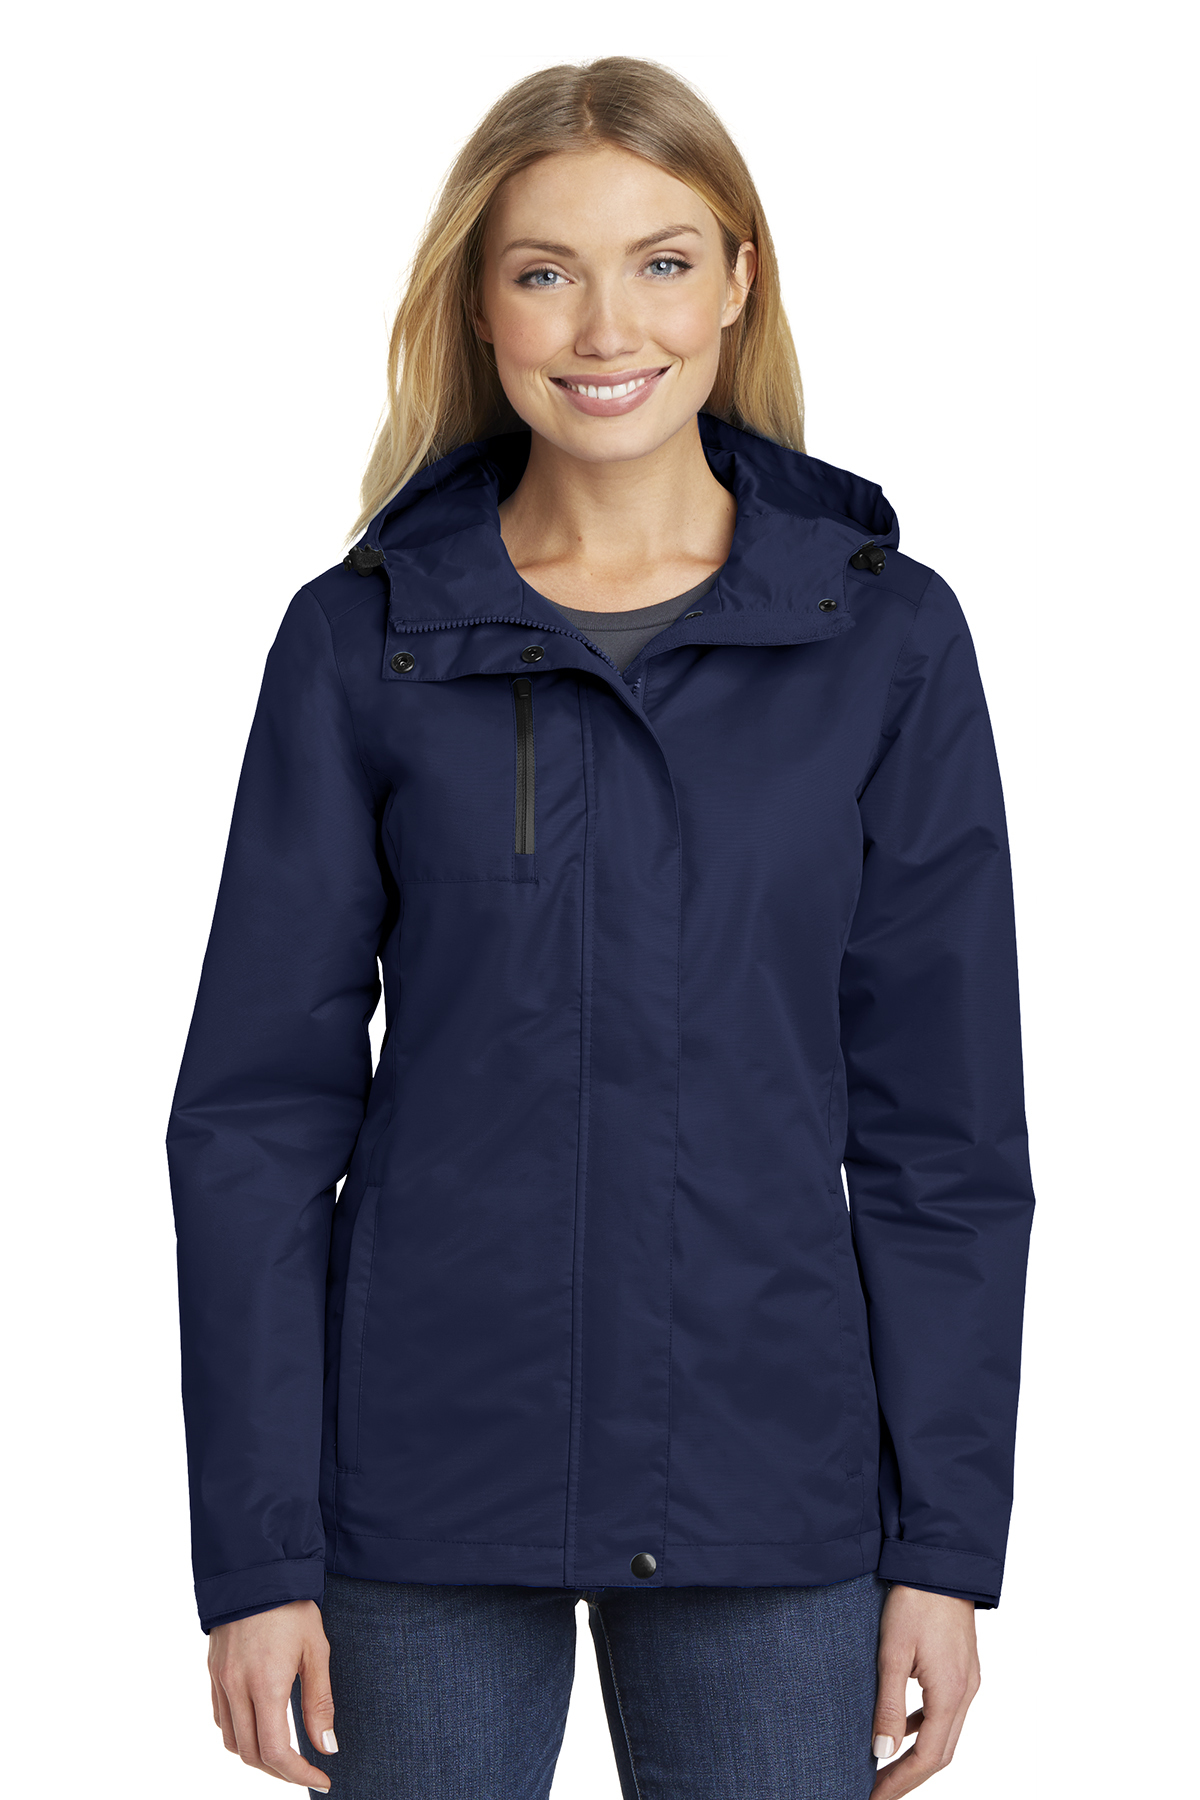 L331 Ladies All-Conditions Jacket – Adce Uniforms – AVIS & BUDGET Uniforms